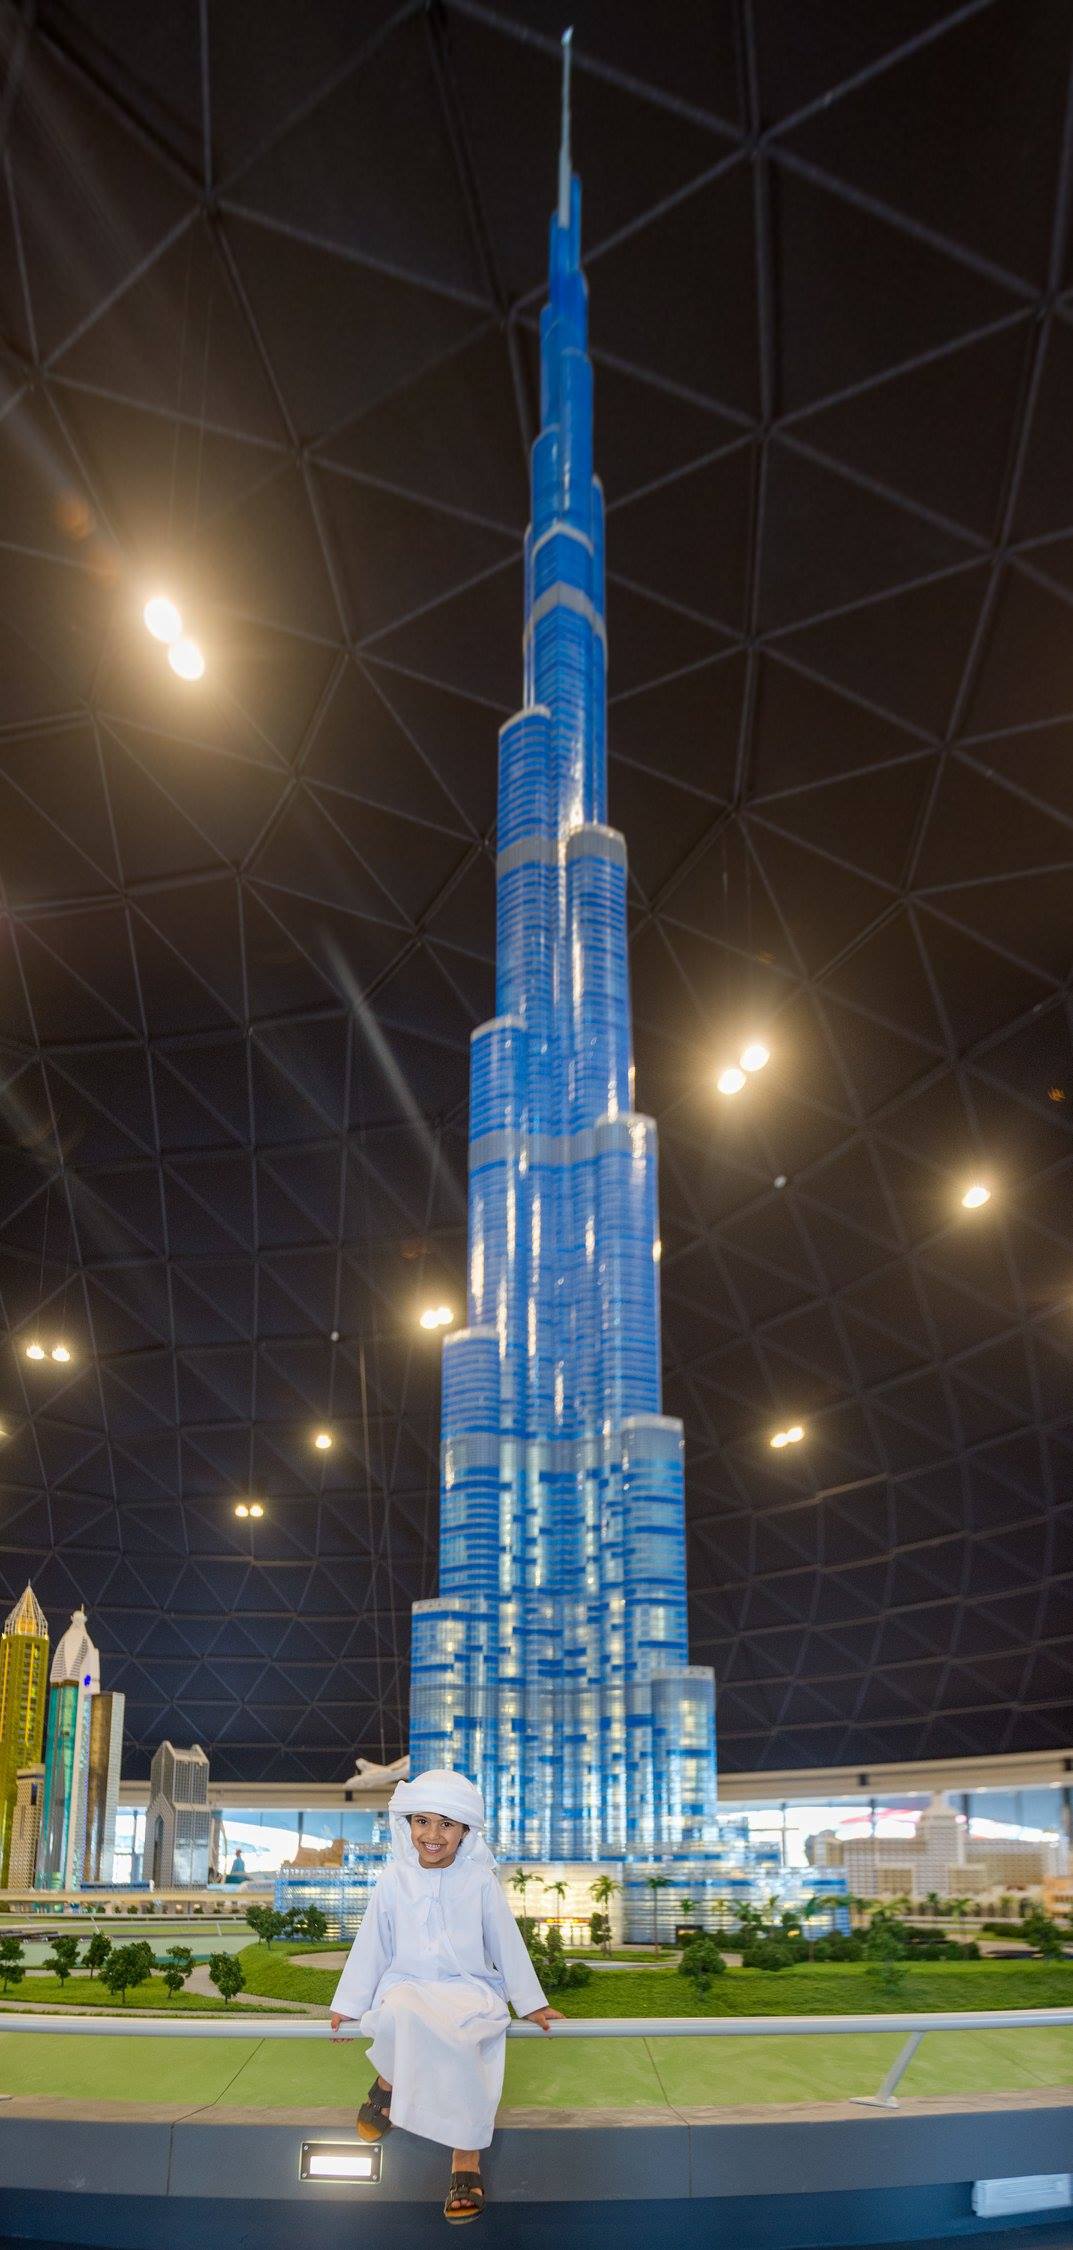 Brickfinder - The World’s Tallest LEGO Burj Khalifa